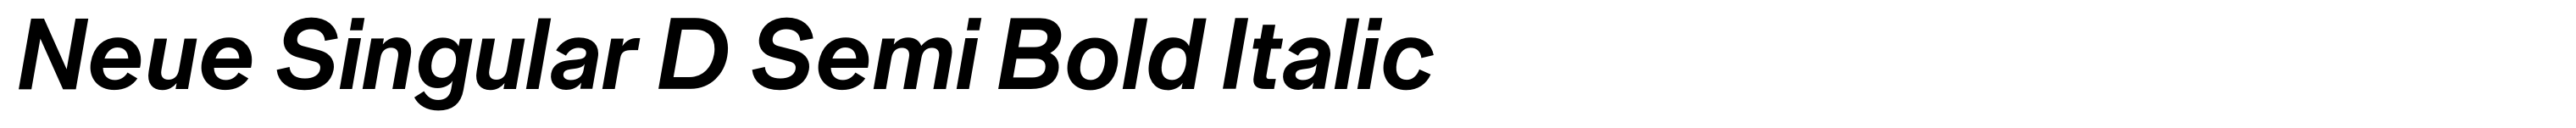 Neue Singular D Semi Bold Italic